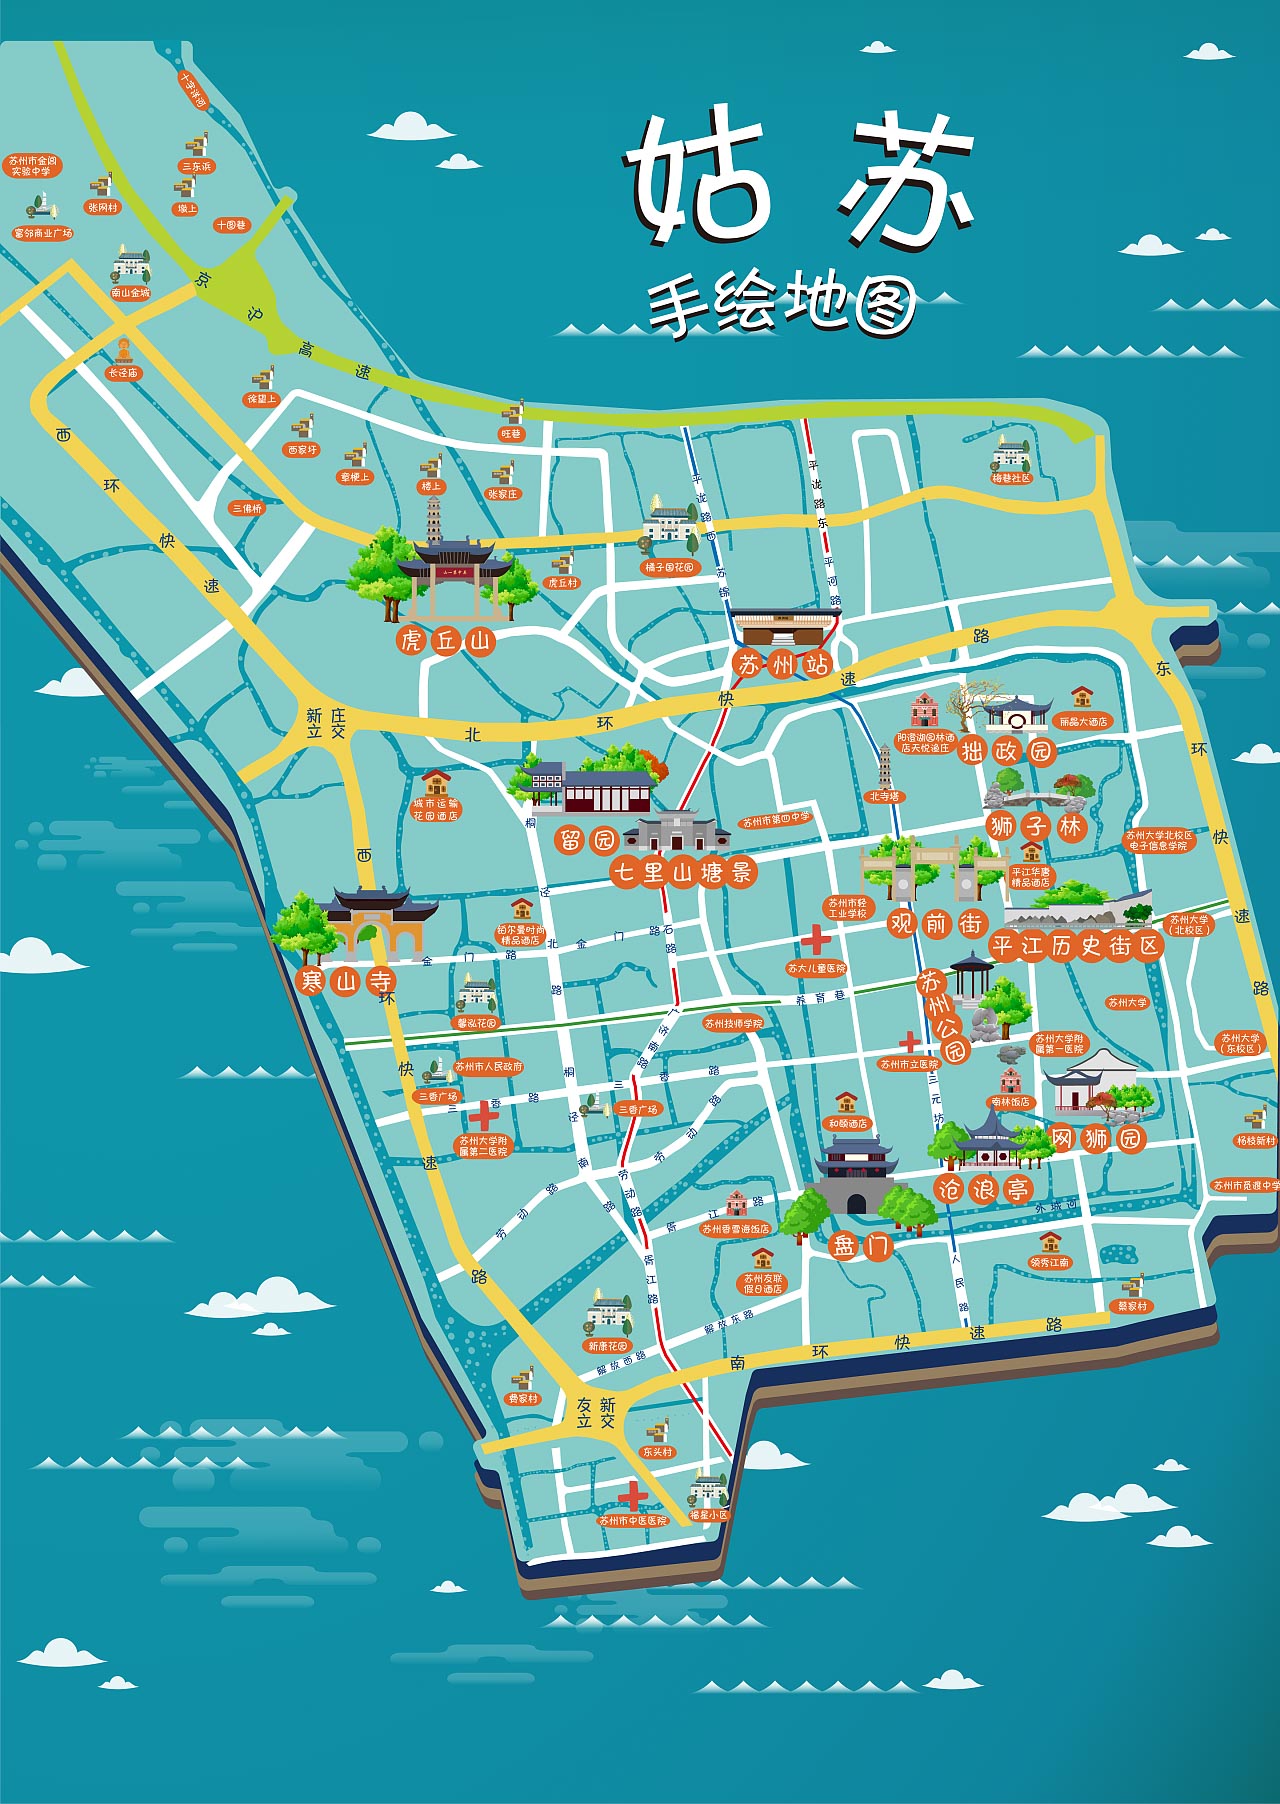 吉阳镇手绘地图景区的文化宝藏